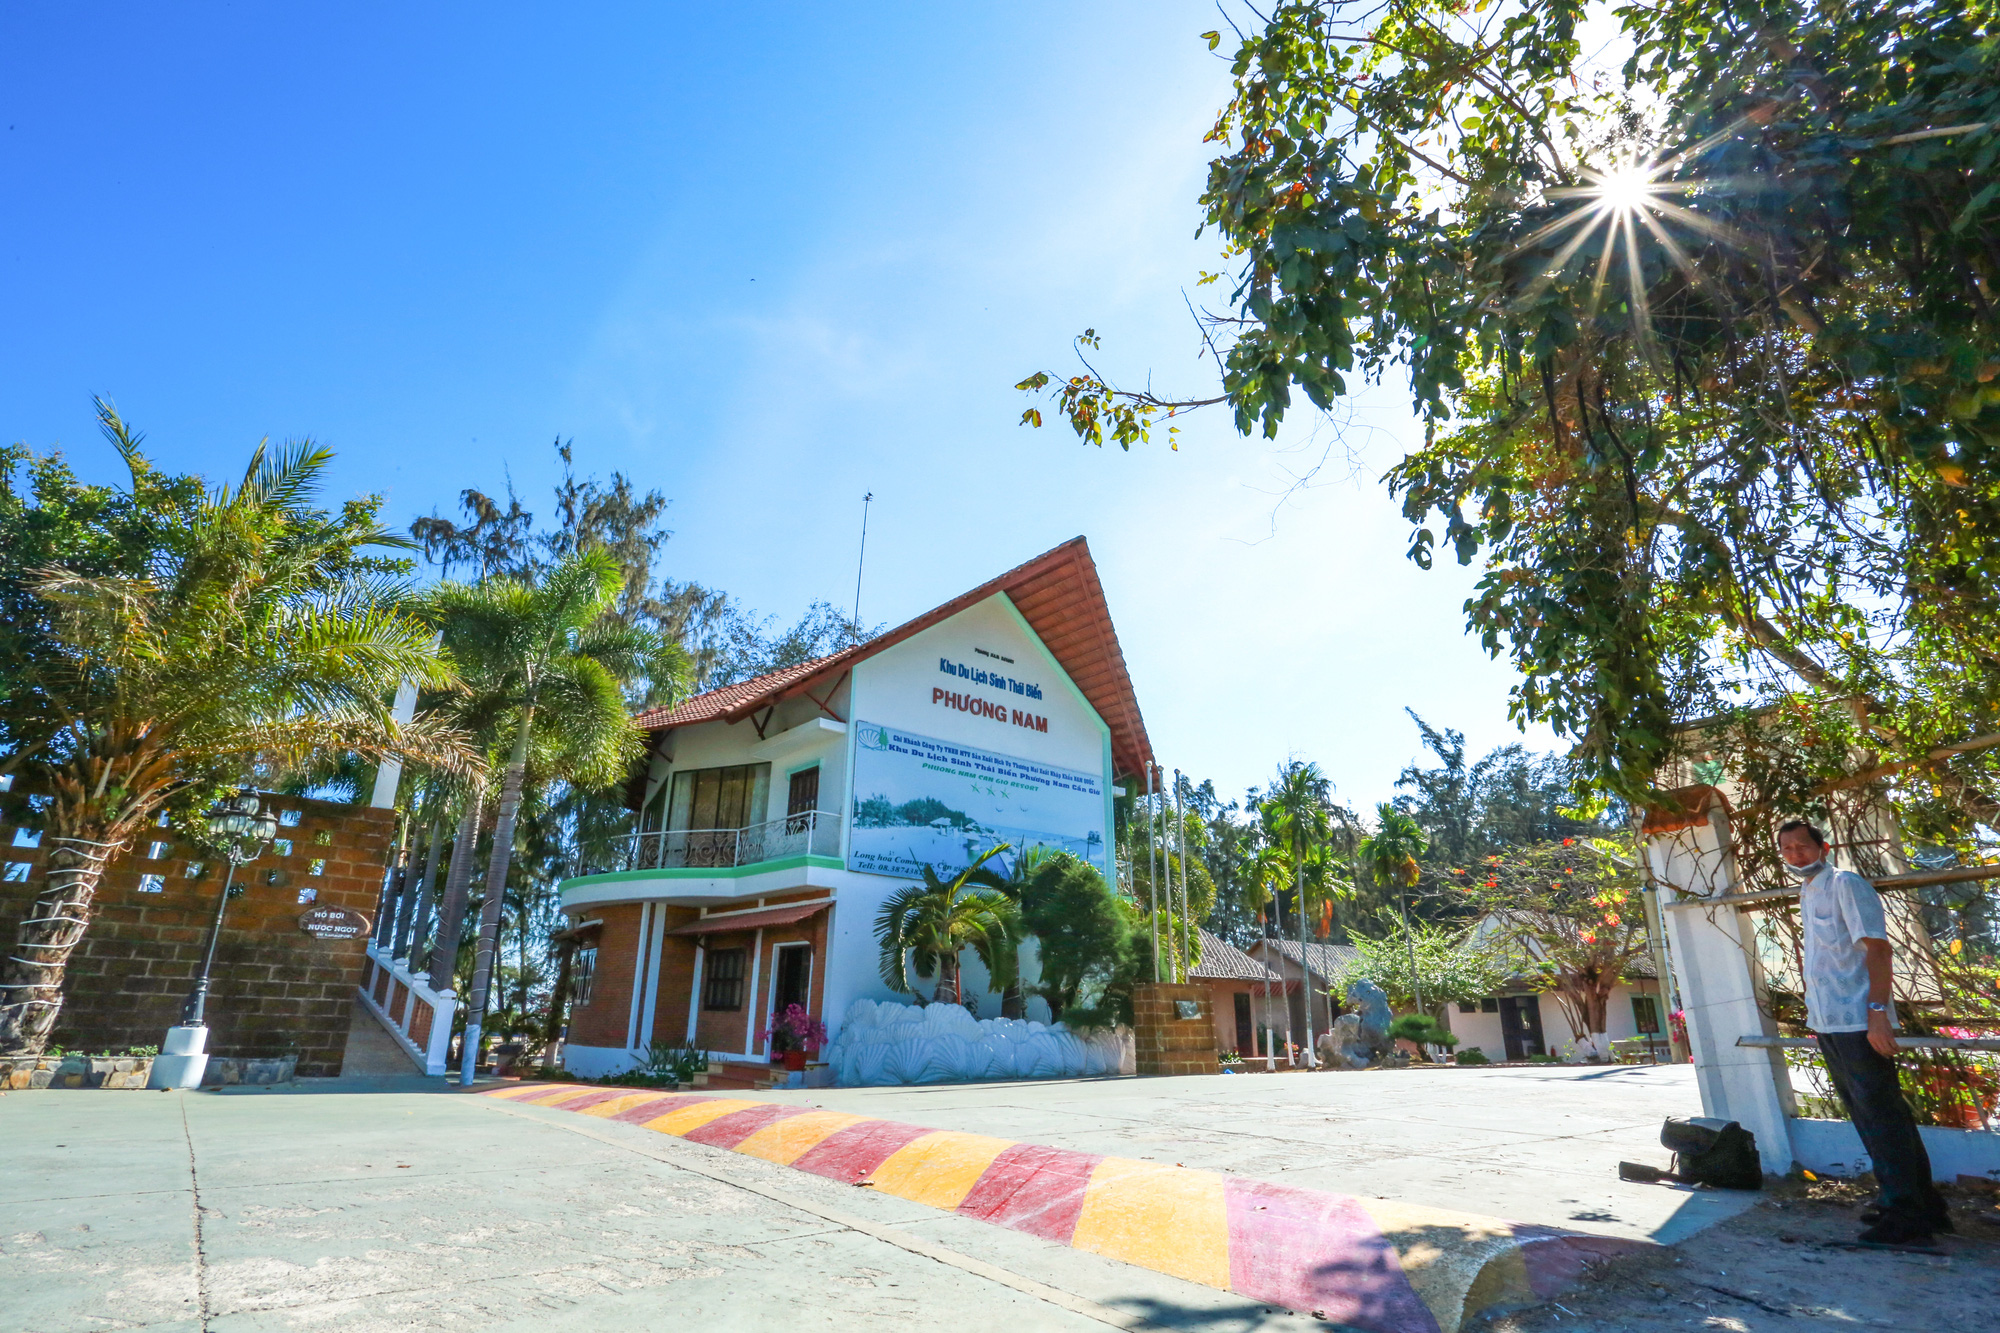 Resort sát biển ở TP.HCM thành khu cách ly, người đến đây được chăm sóc sức khoẻ, miễn phí ăn ở - Ảnh 7.